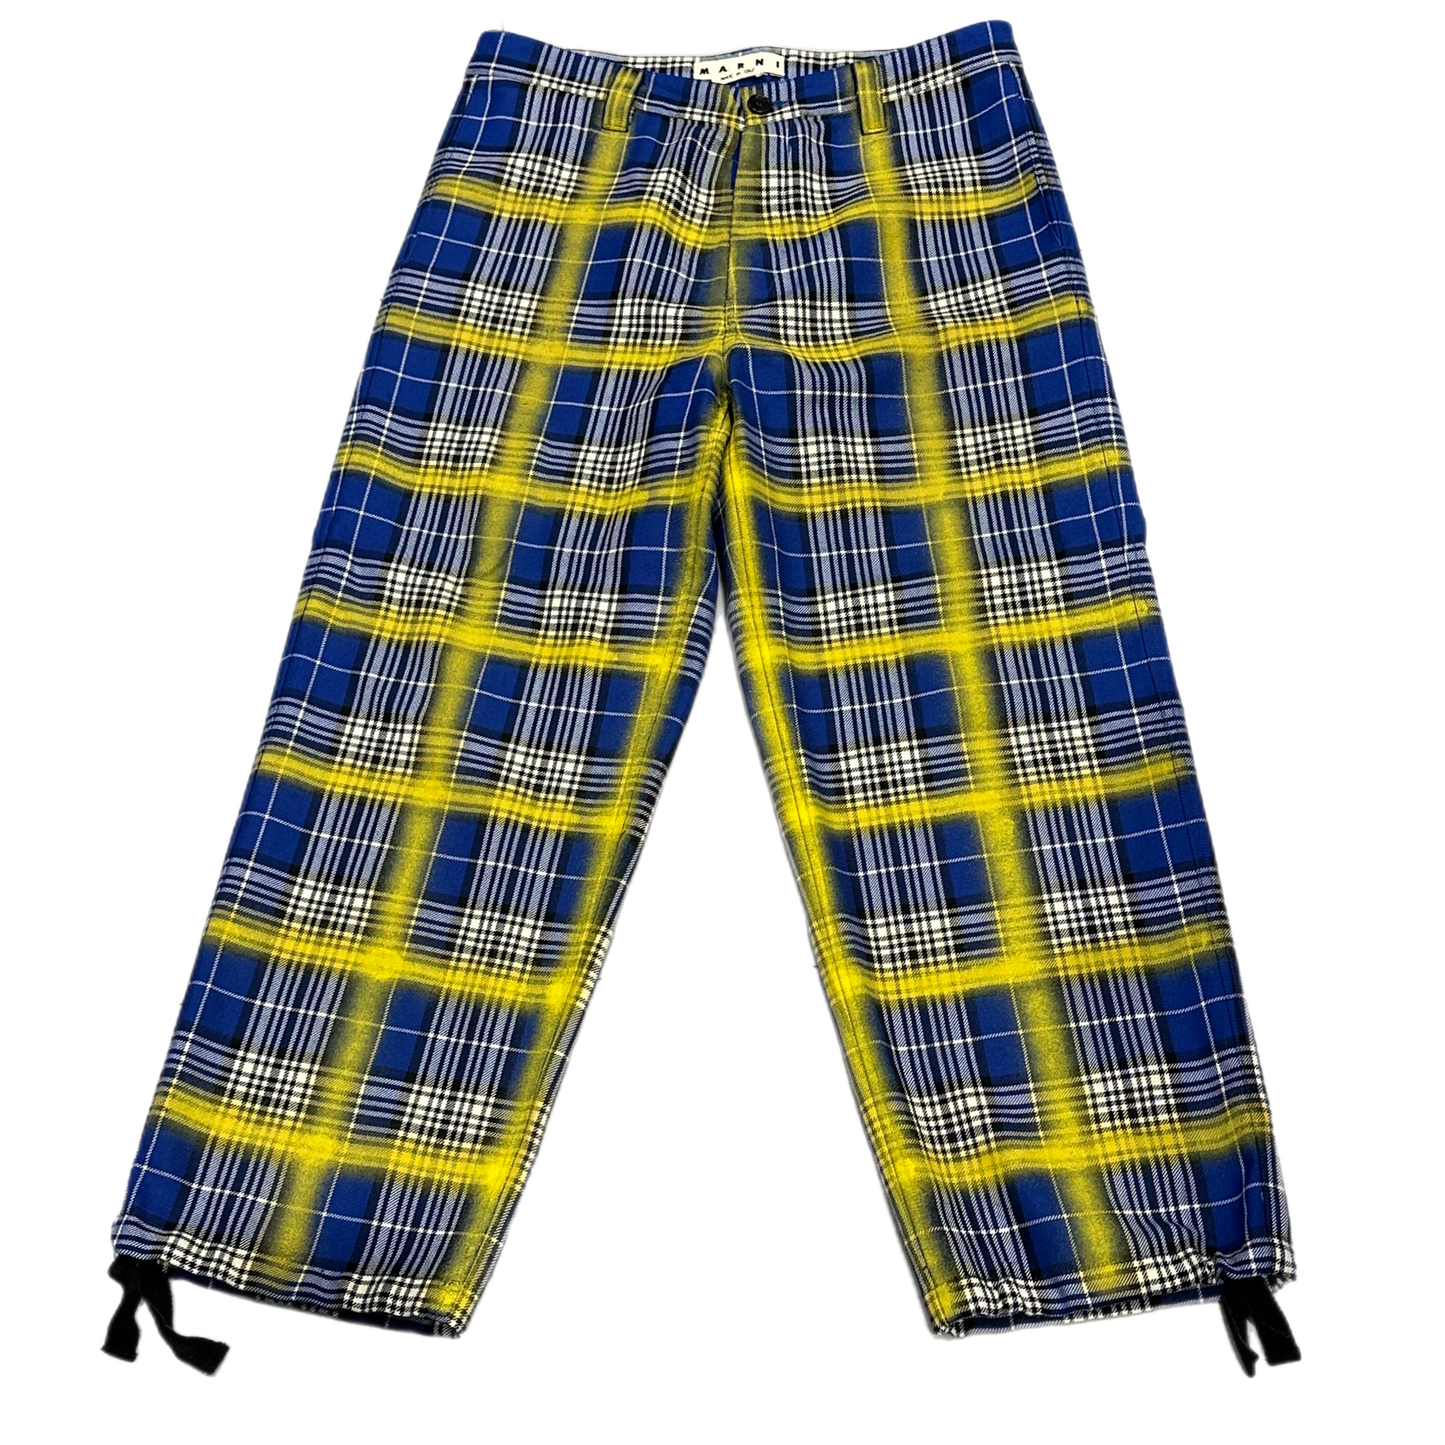 Marni - "Blue/Yellow Plaid Pant" -Size 52